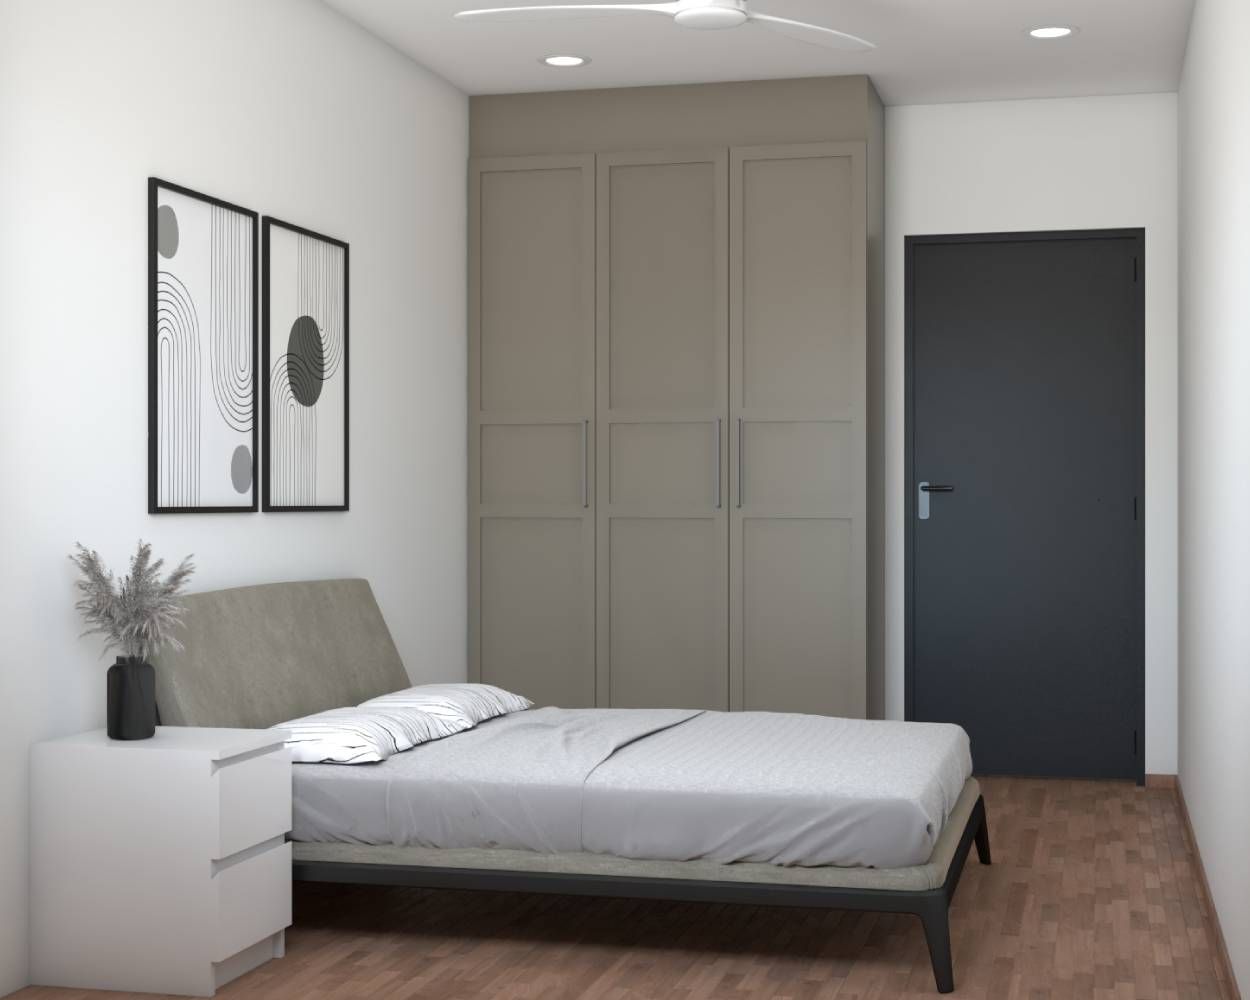 Minimal 3-Door Grey Wardrobe Design With Suede Laminates